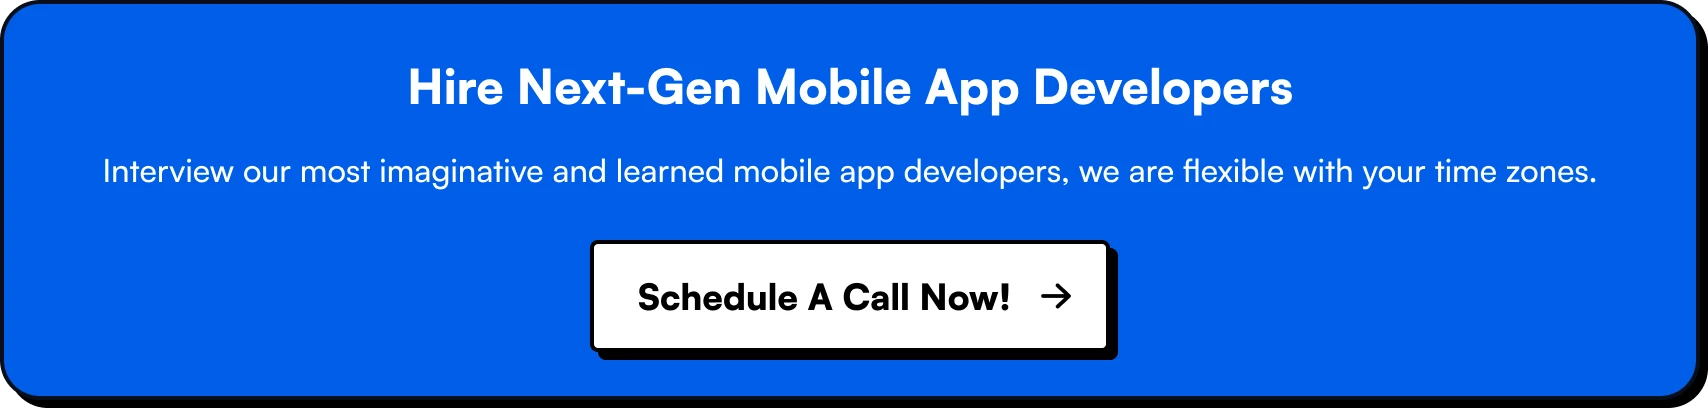 Hire Next-Gen Mobile App Developers for your FinTech App Ideas